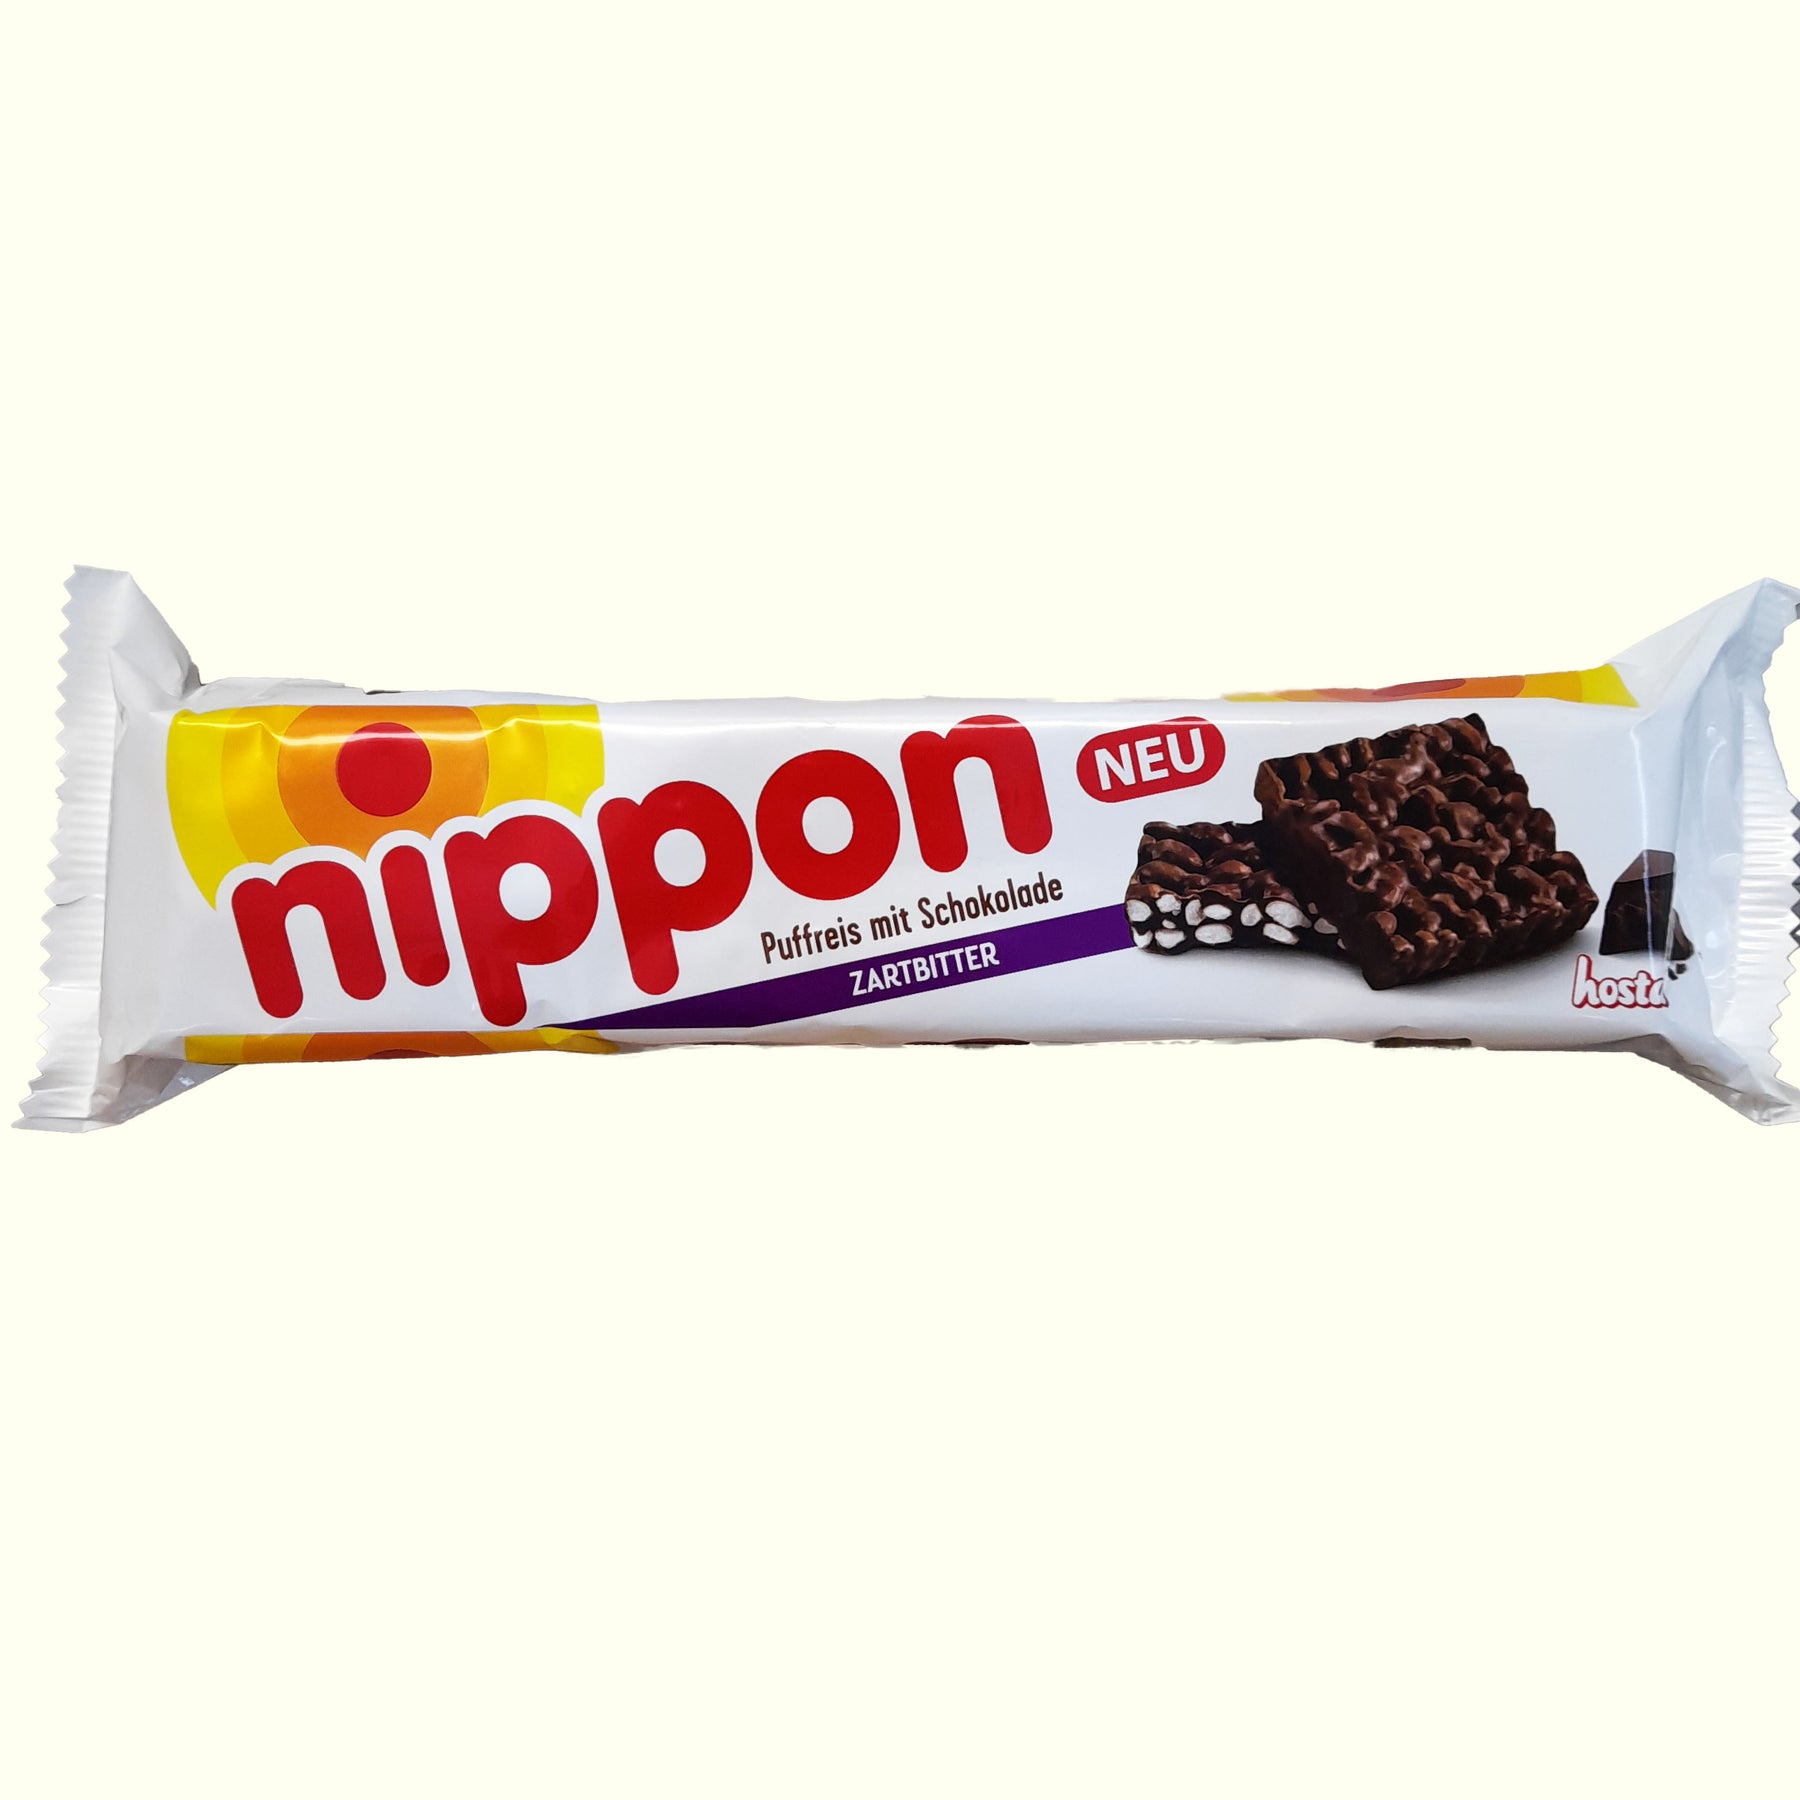 Hosta Nippon Puffreis mit Zartbitter Schokolade 200g